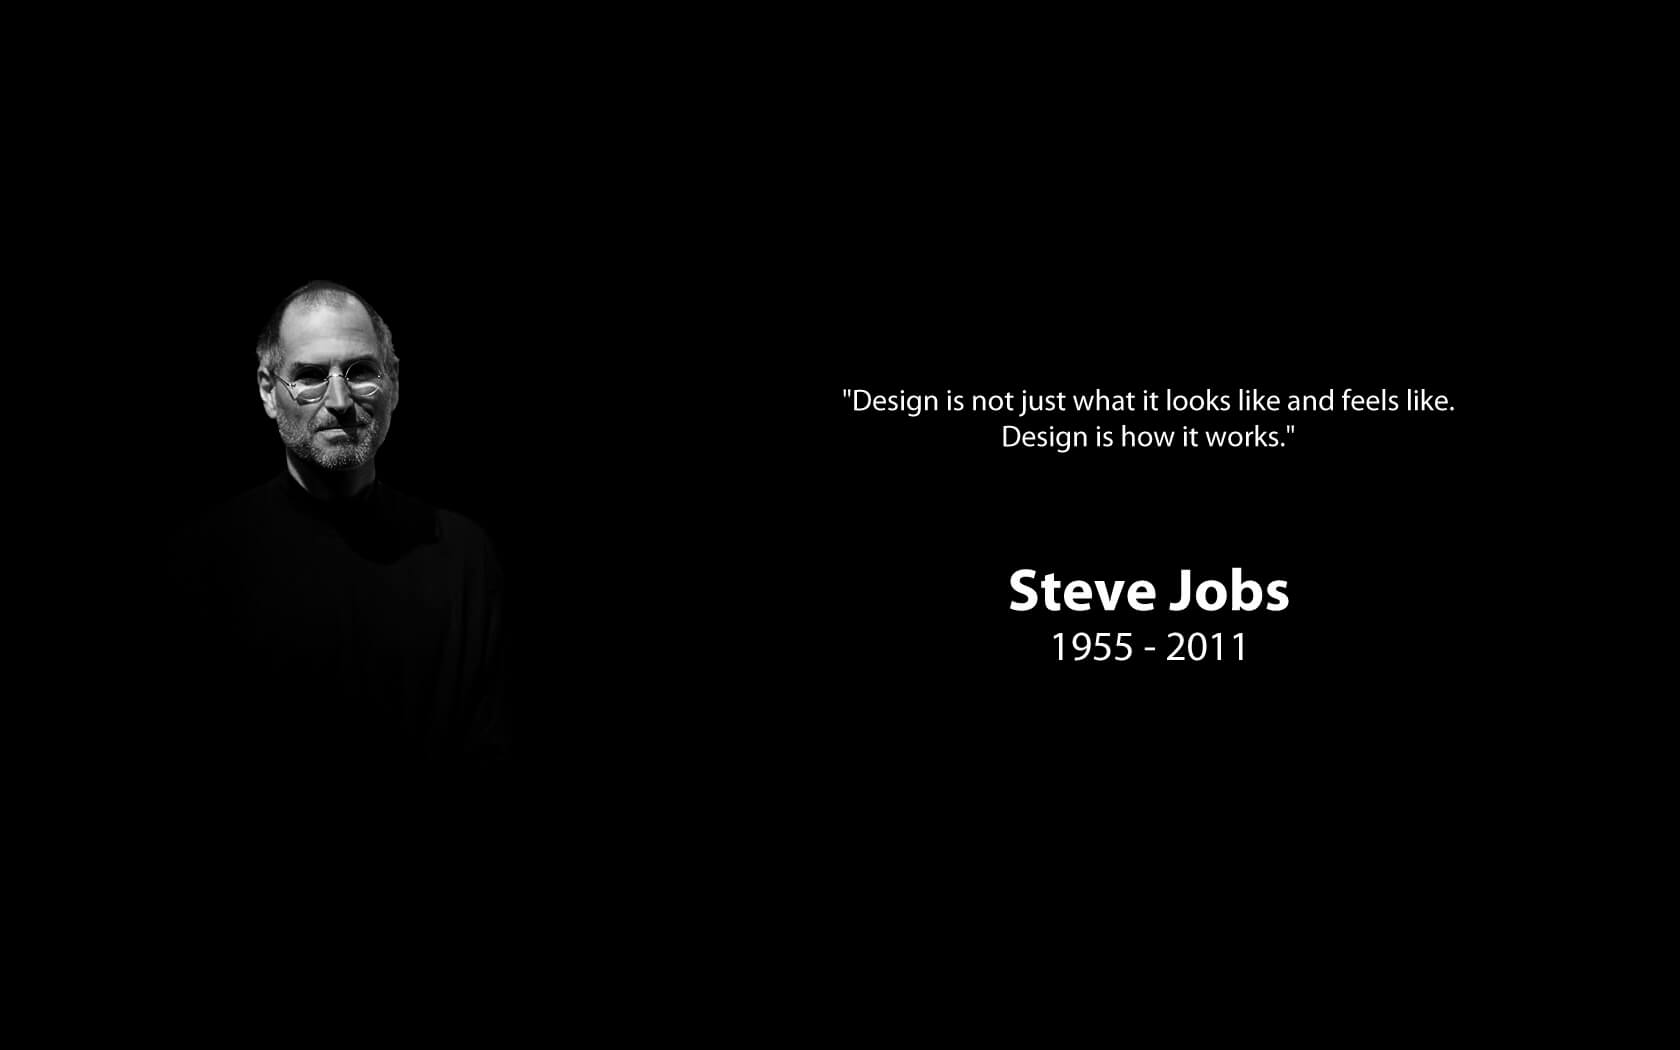 Steve Jobs wallpapers - Celebrities FPW